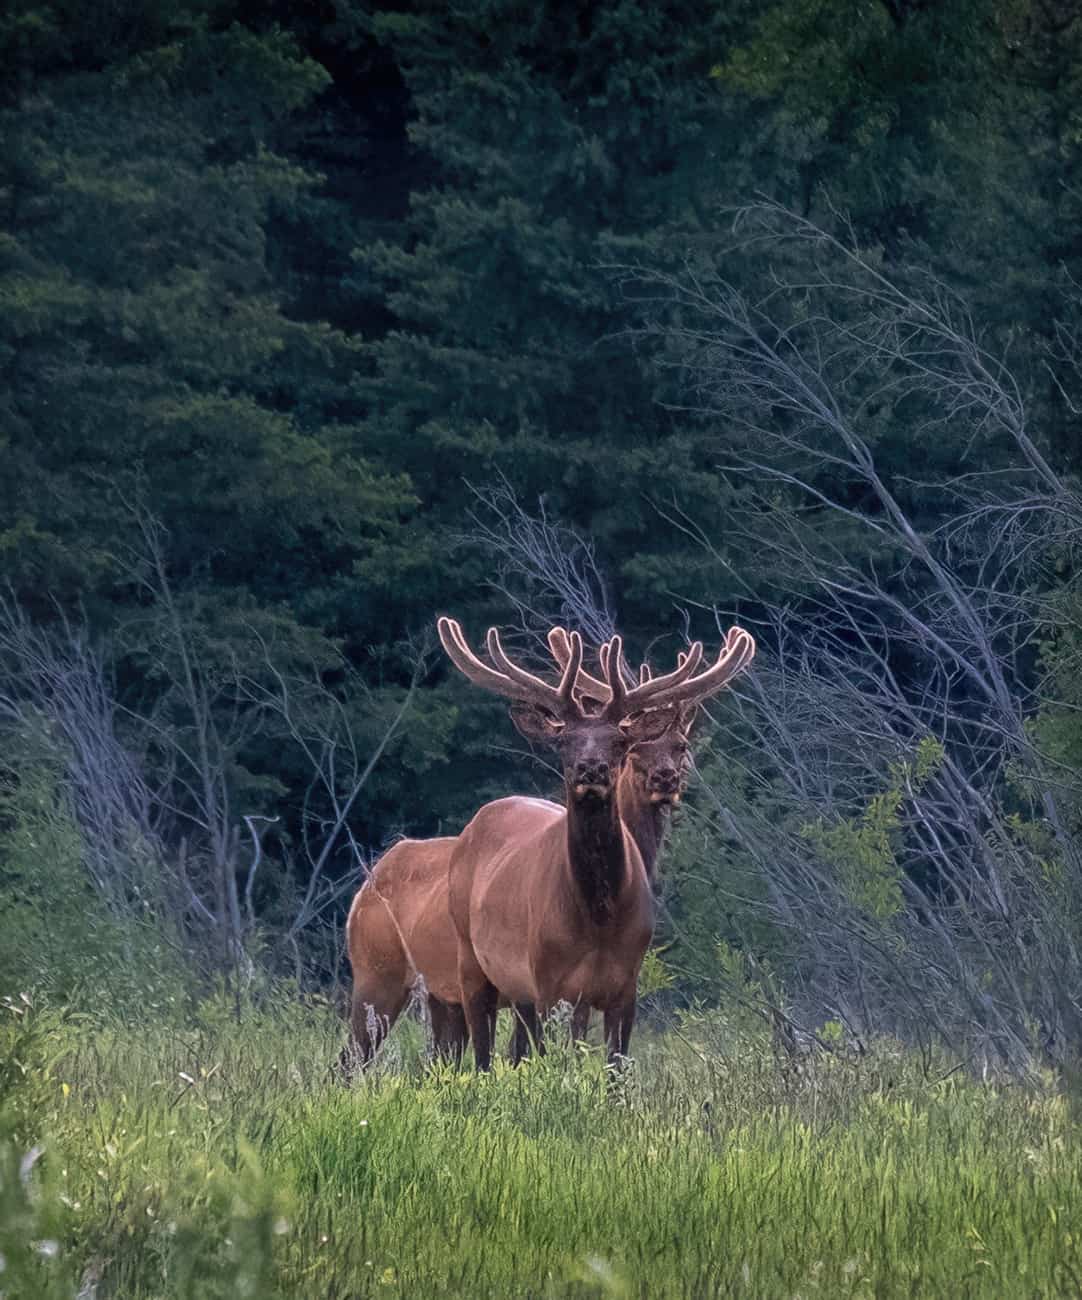 Pair of Bull Elk in Velvet